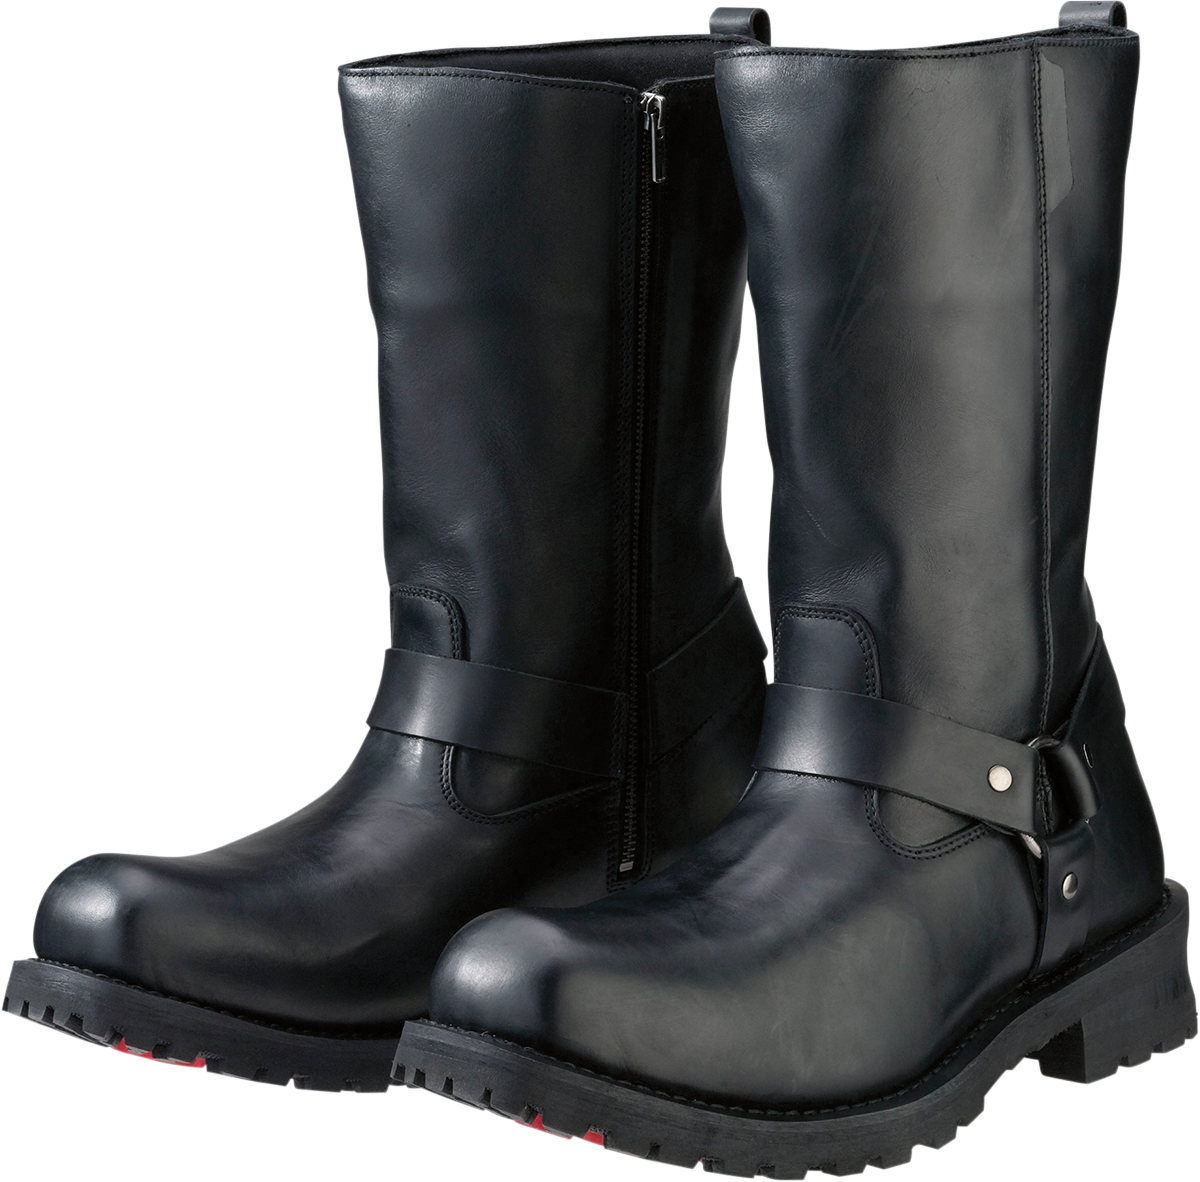 Z1R Riot Boots - Black - US 15 3403-0764